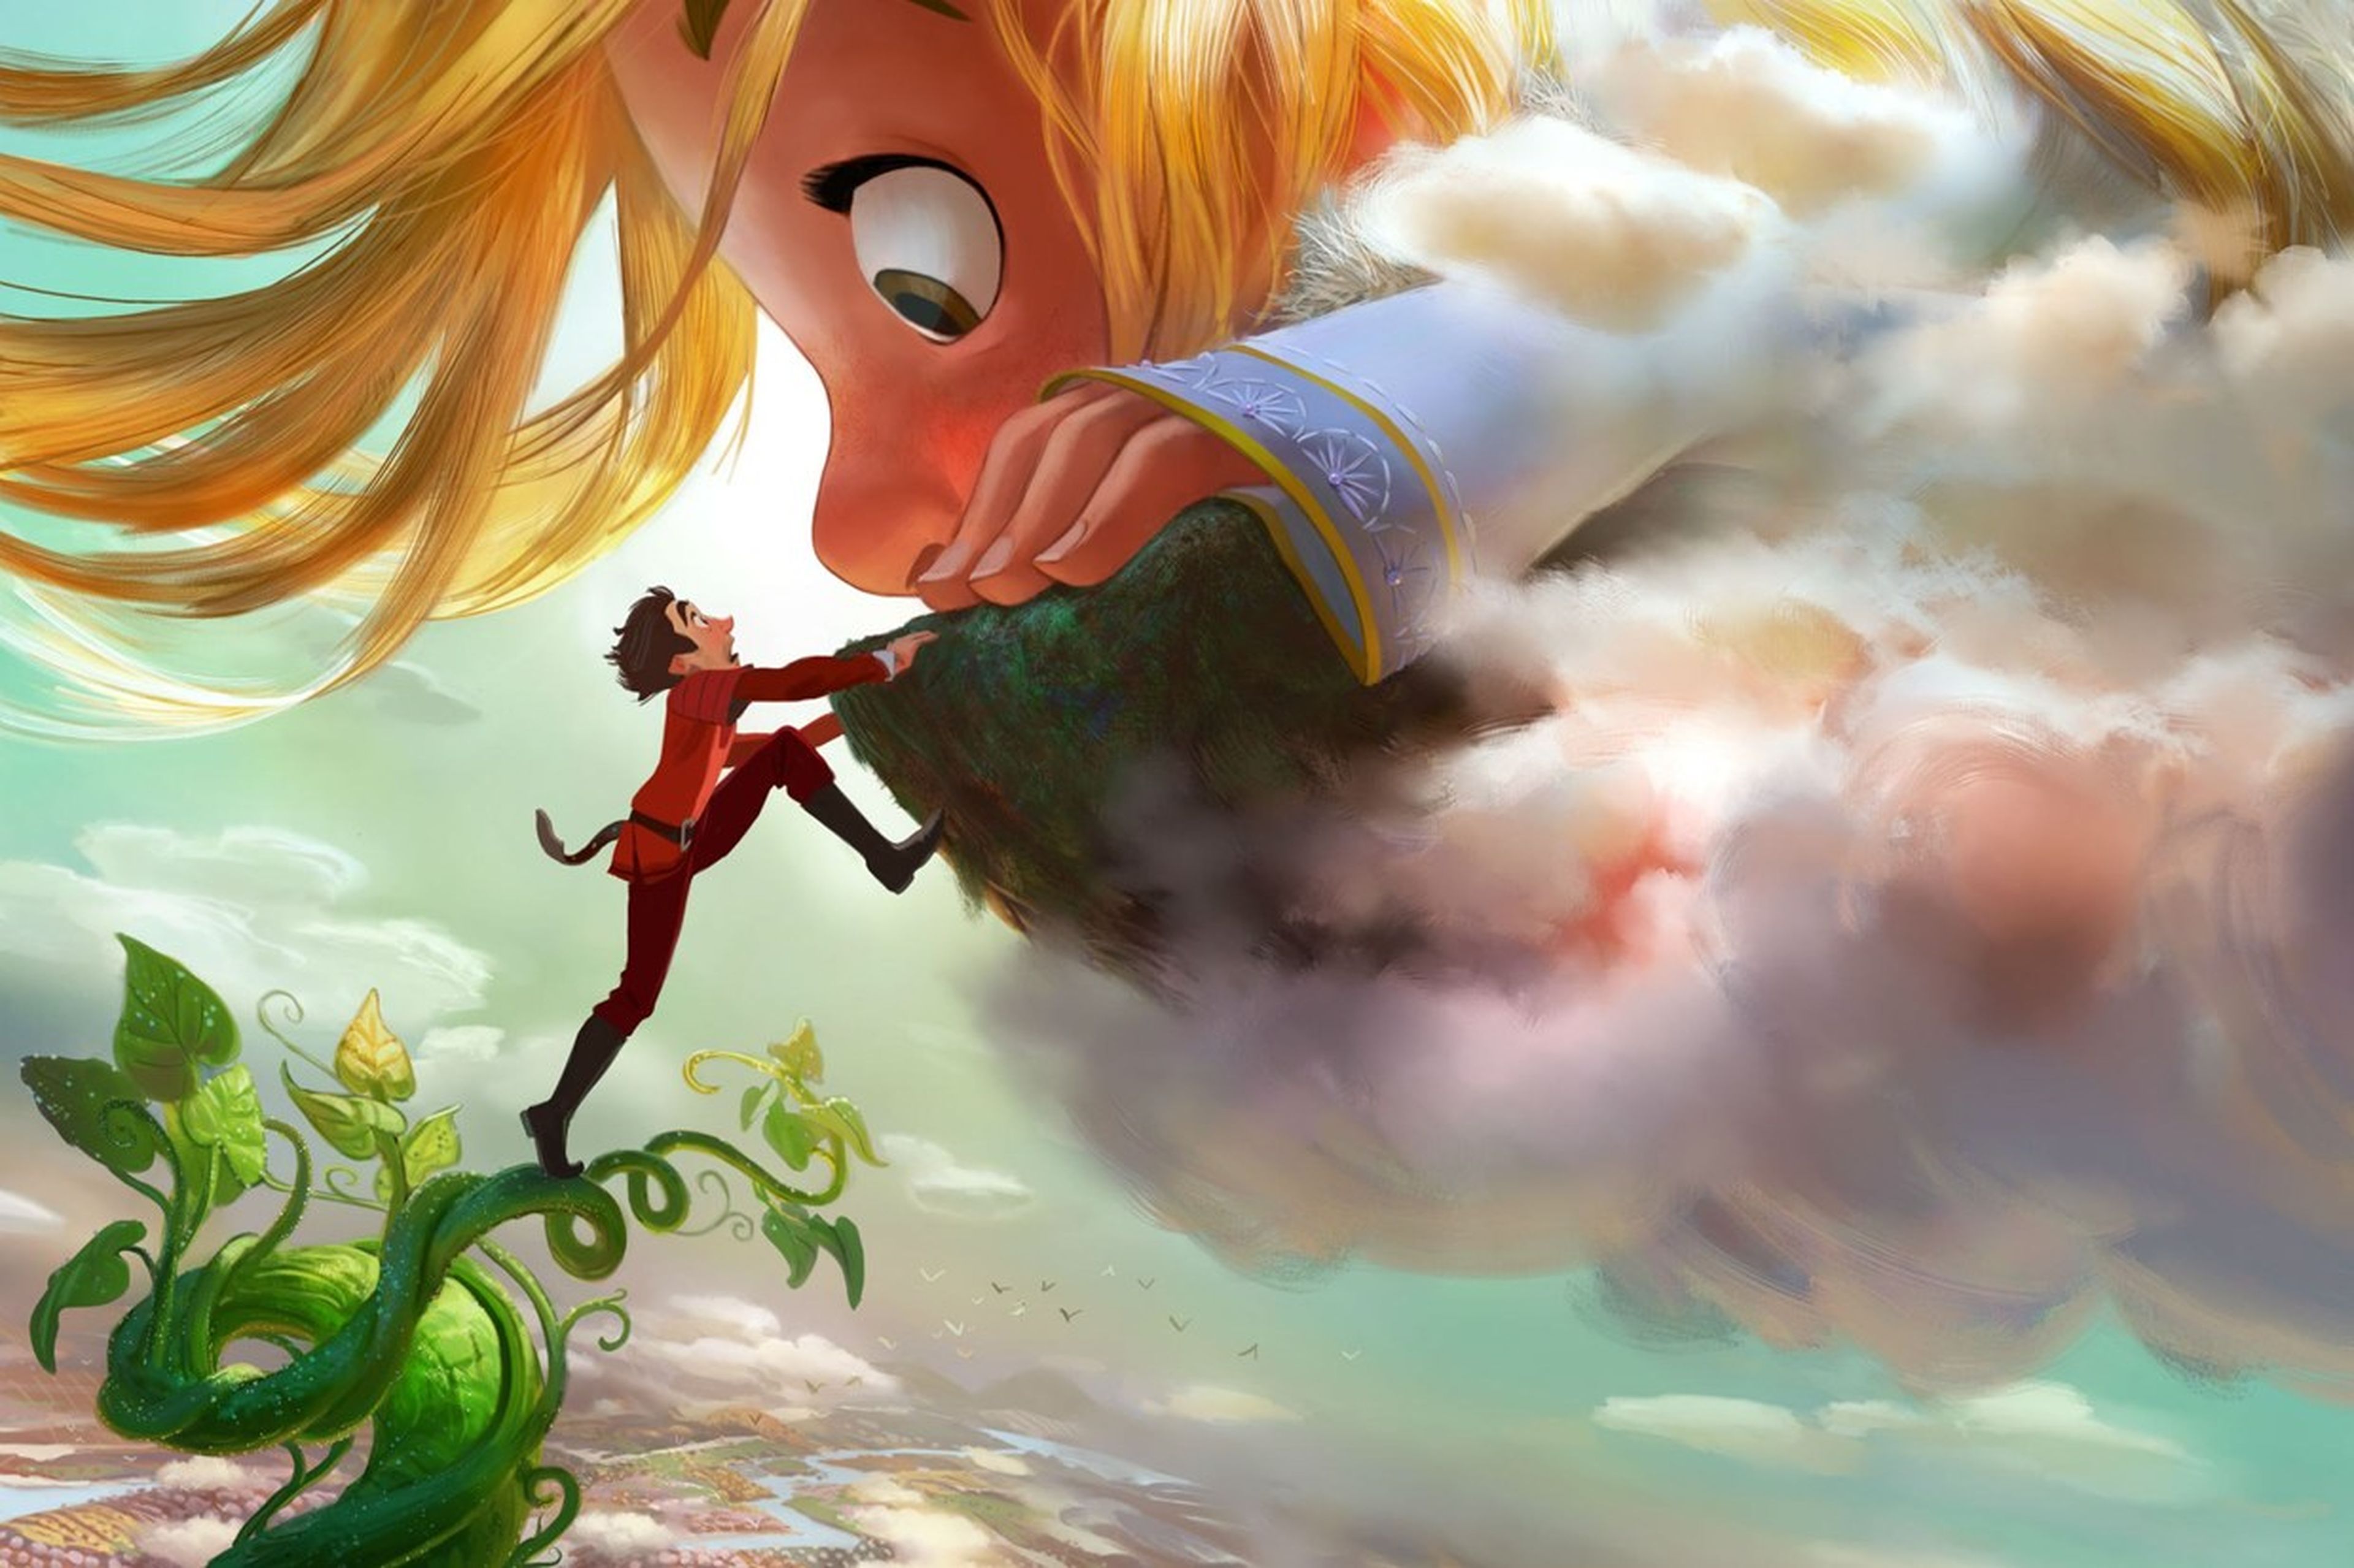 Gigantic, nueva película animada de Disney